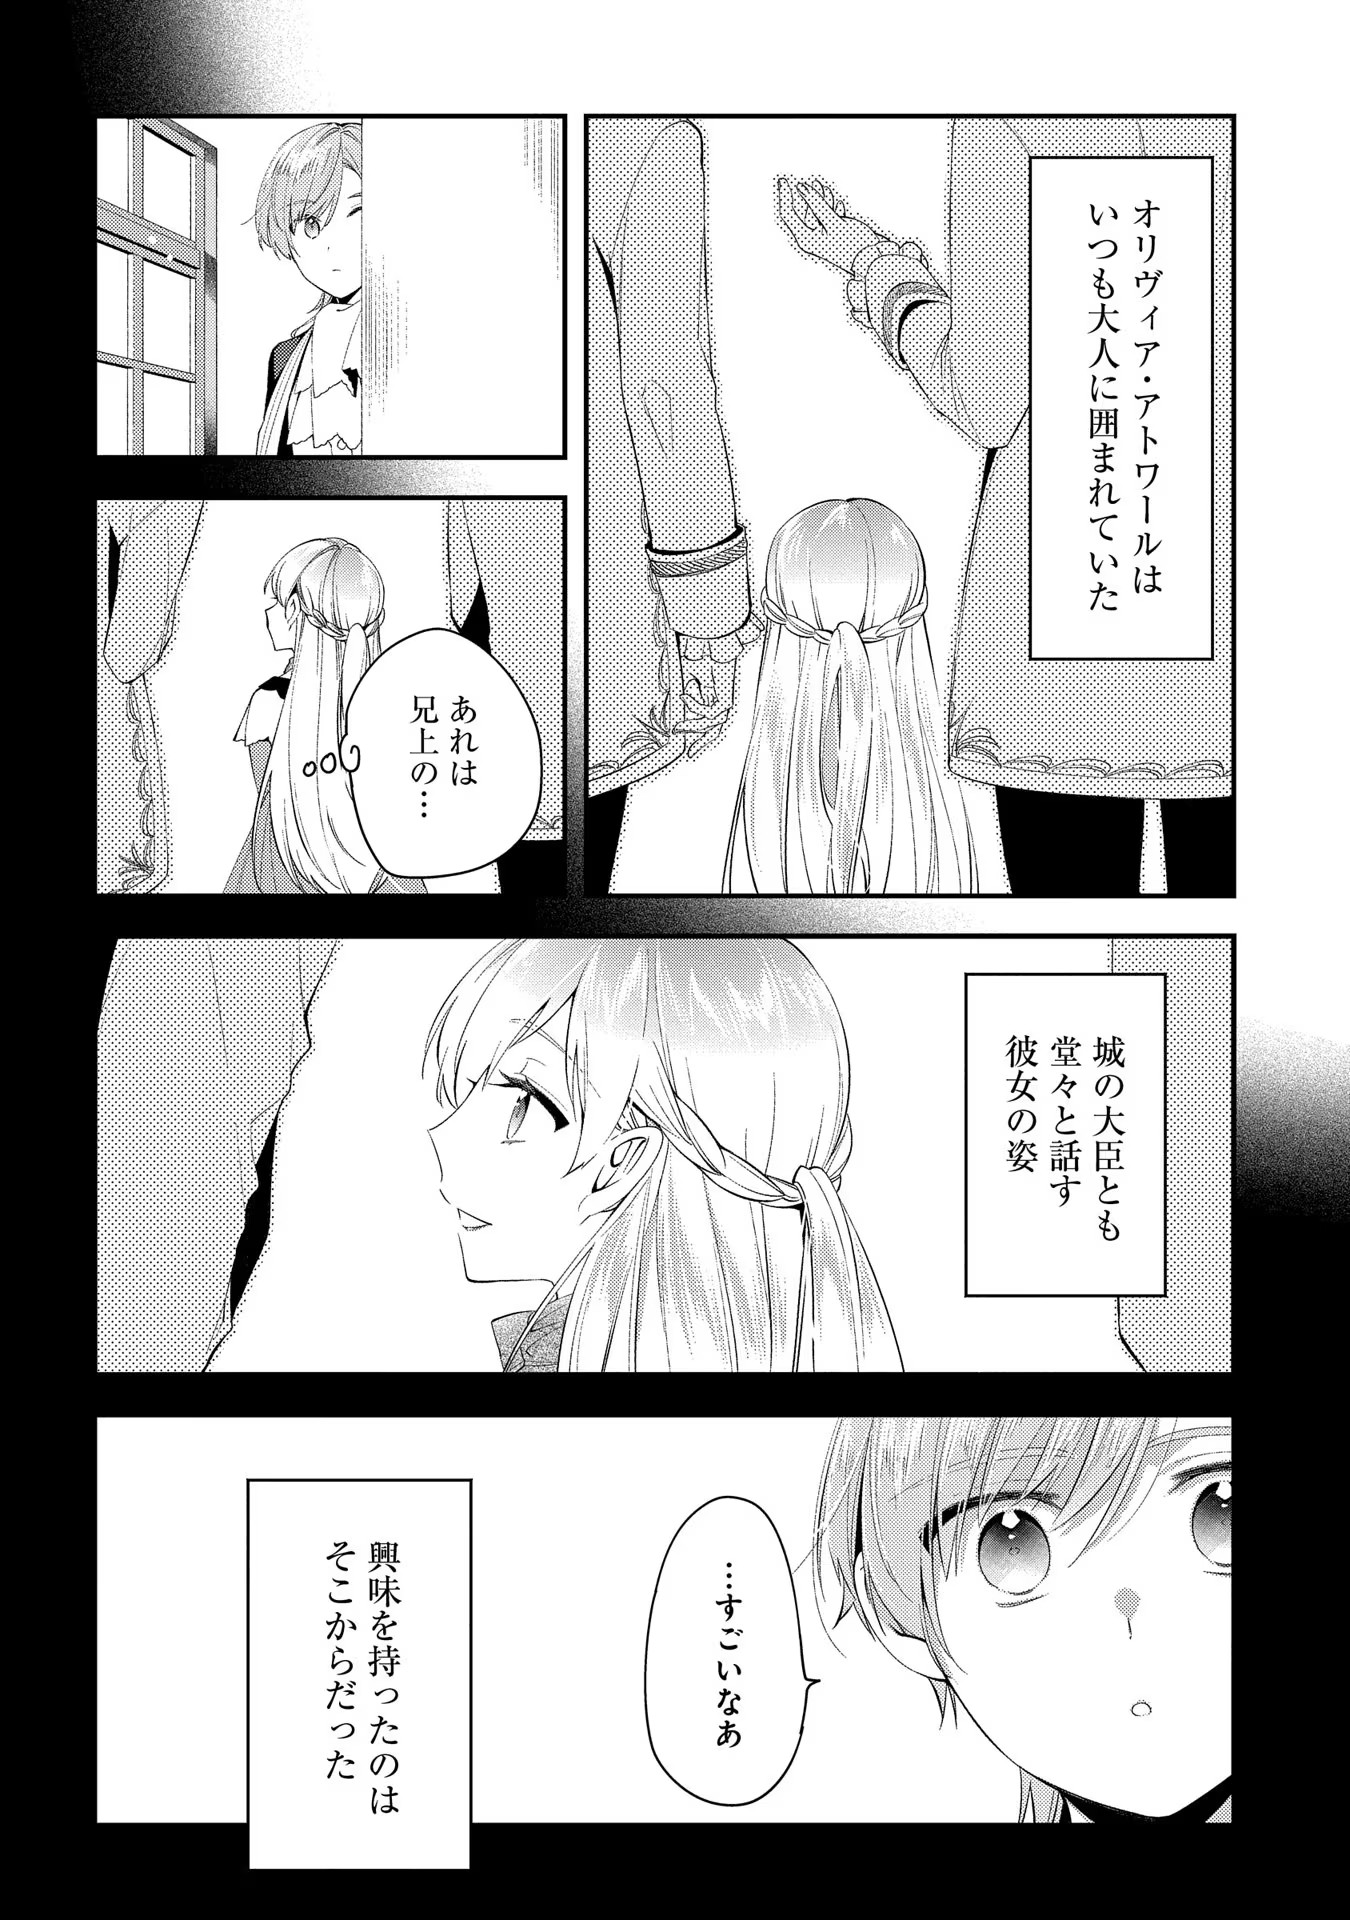 Outaishi ni Konyaku Hakisareta no de, Mou Baka no Furi wa Yameyou to Omoimasu - Chapter 3 - Page 14